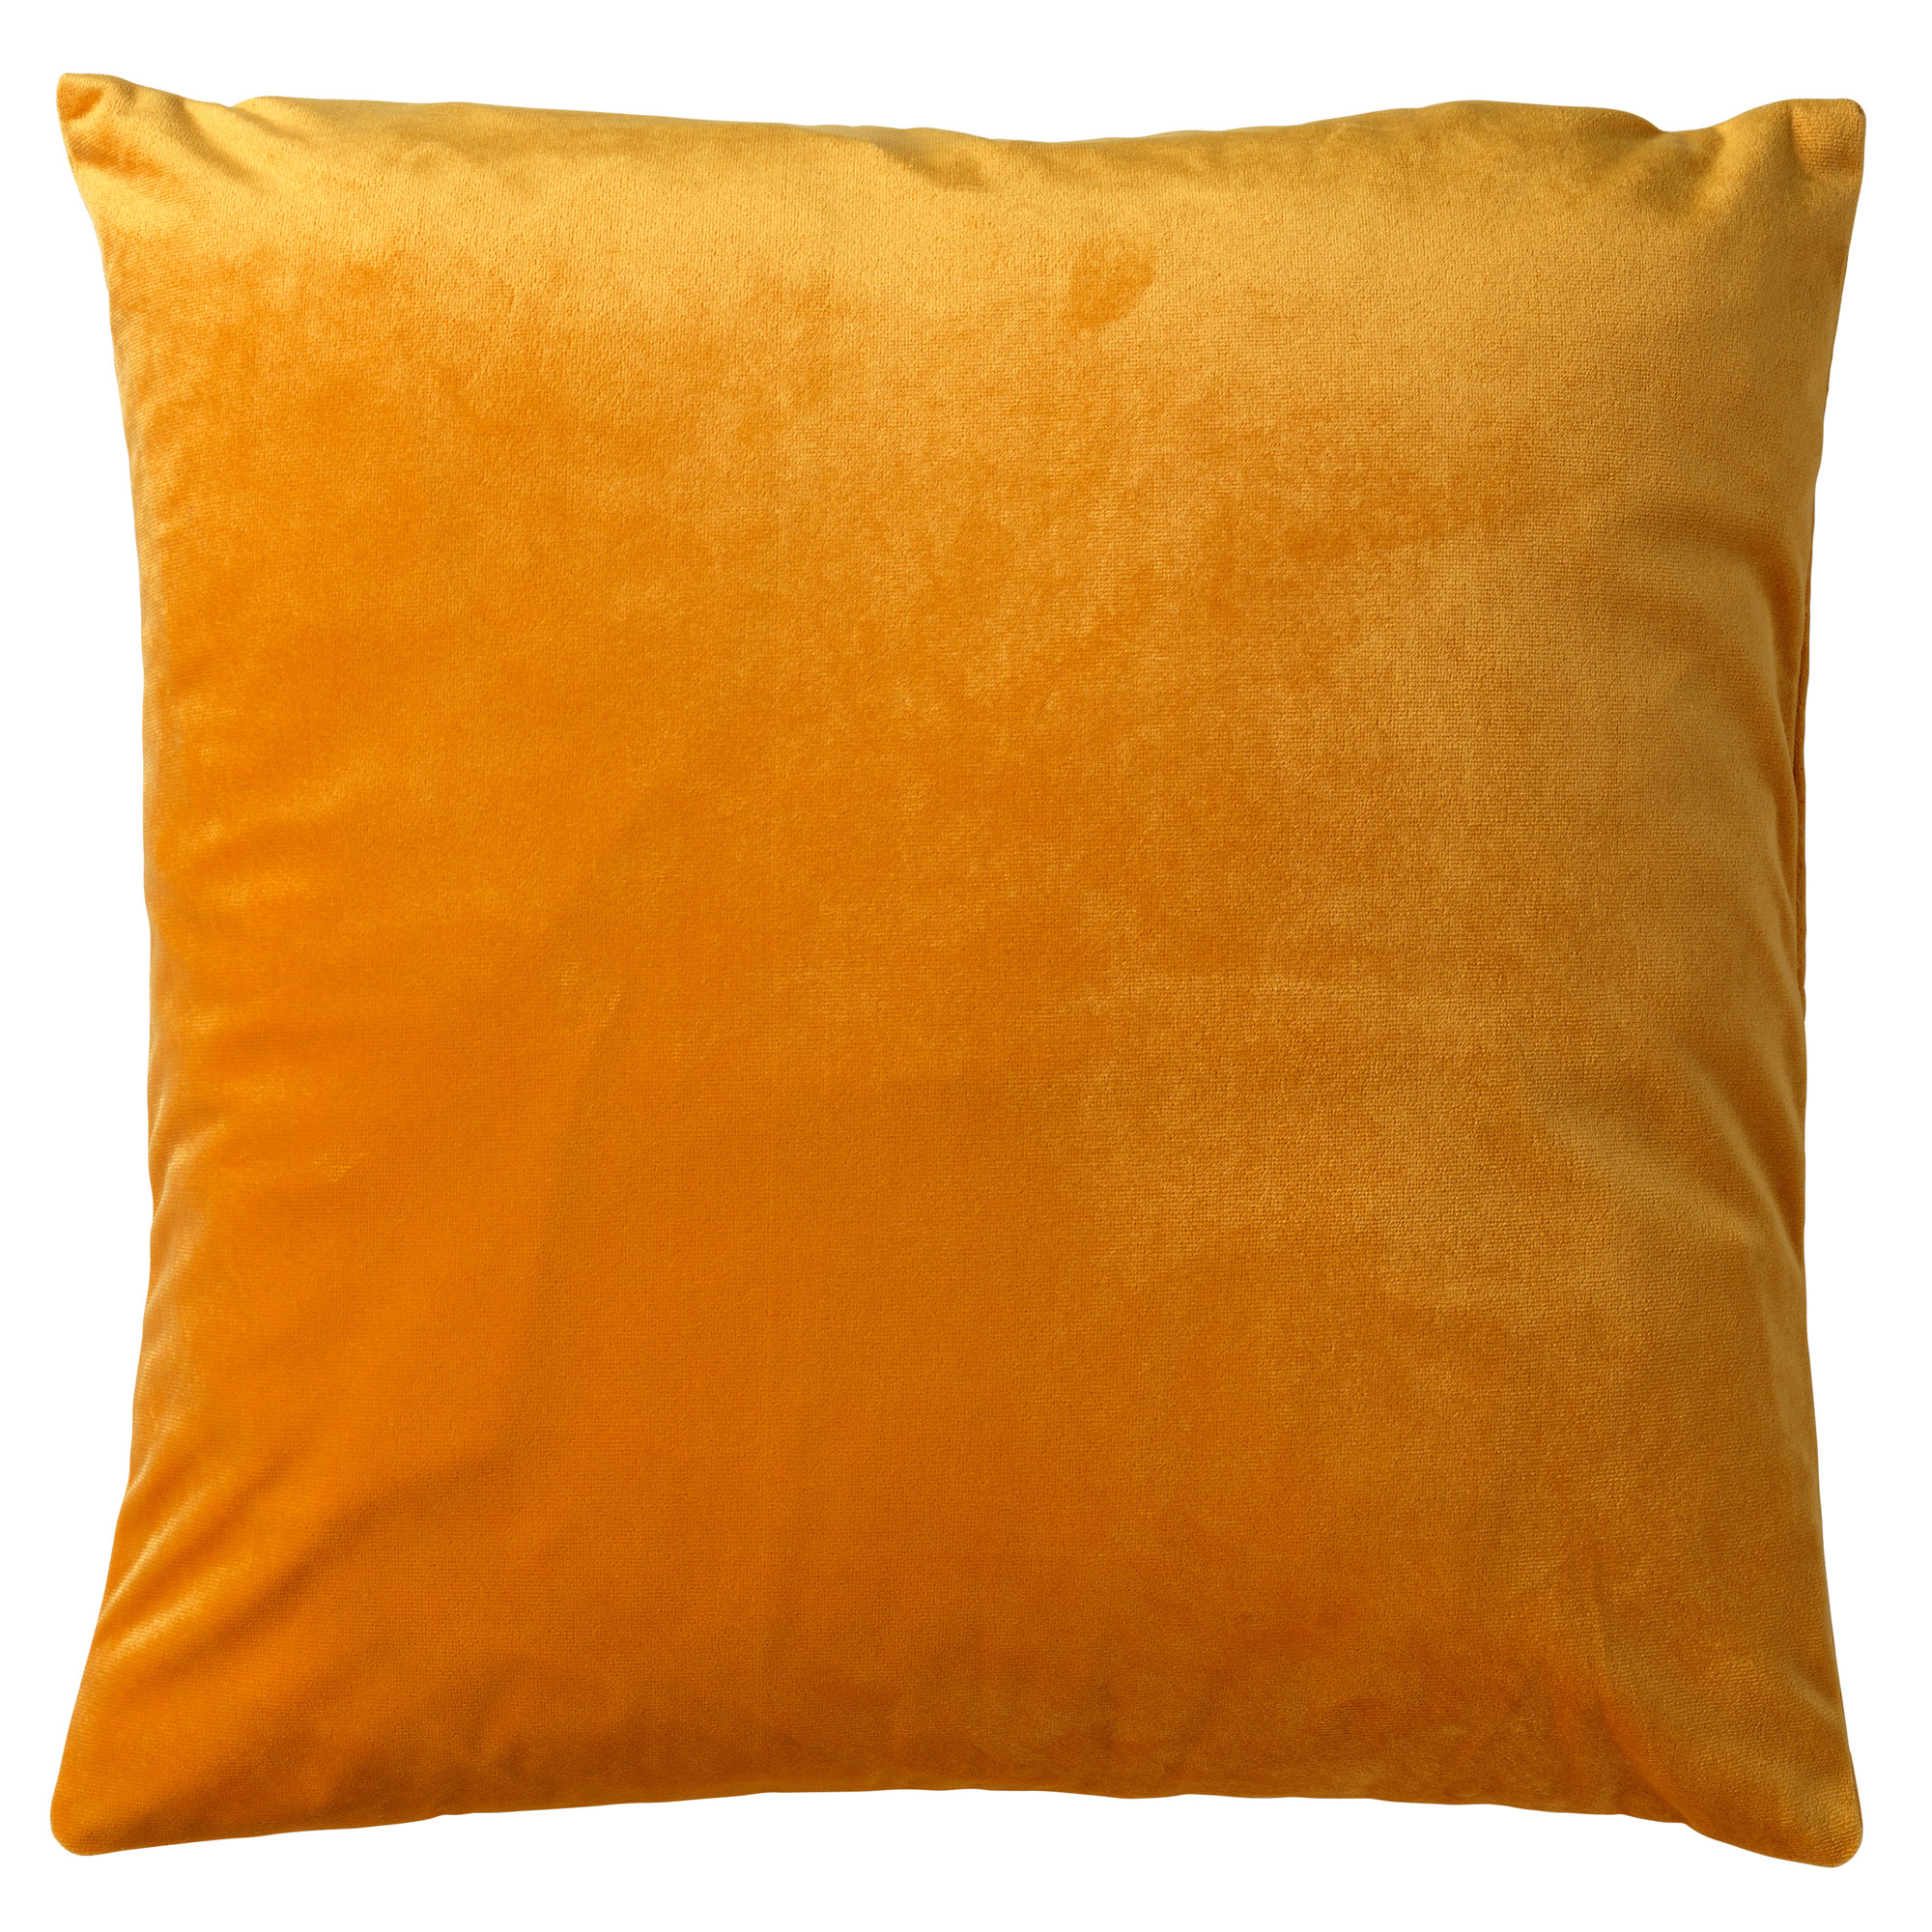 DIAZ - Kussenhoes velvet 45x45 cm Golden Glow  - geel